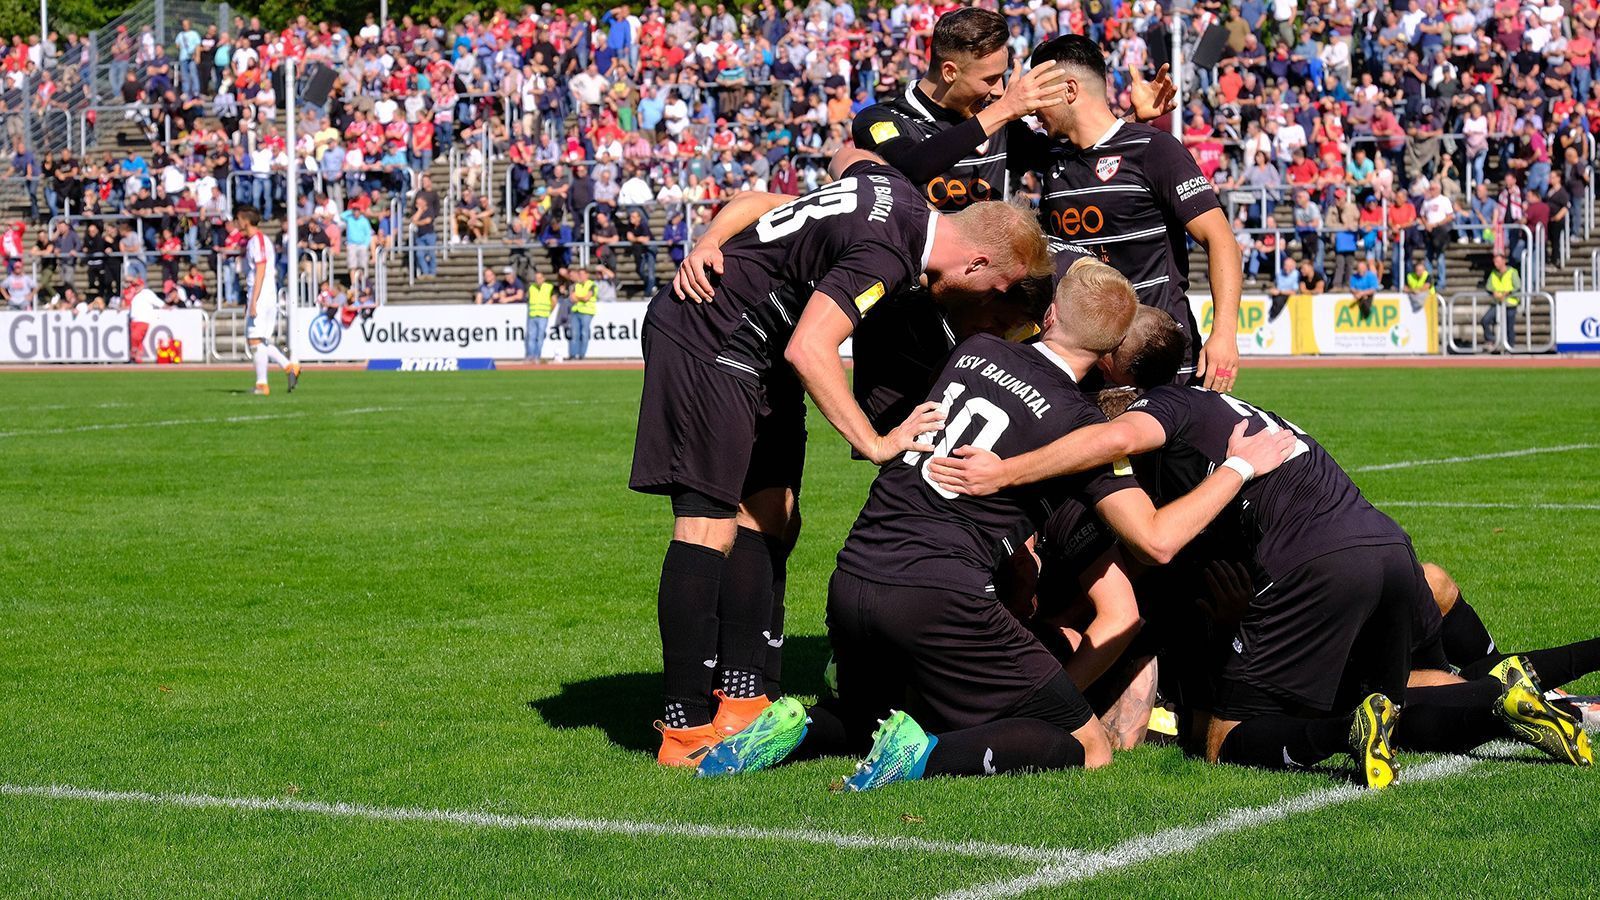 
                <strong>KSV Baunatal</strong><br>
                Als Finalist im Hessenpokal qualifiziert, weil der Gegner SV Wehen Wiesbaden schon durch die Liga qualifiziert ist. 
              